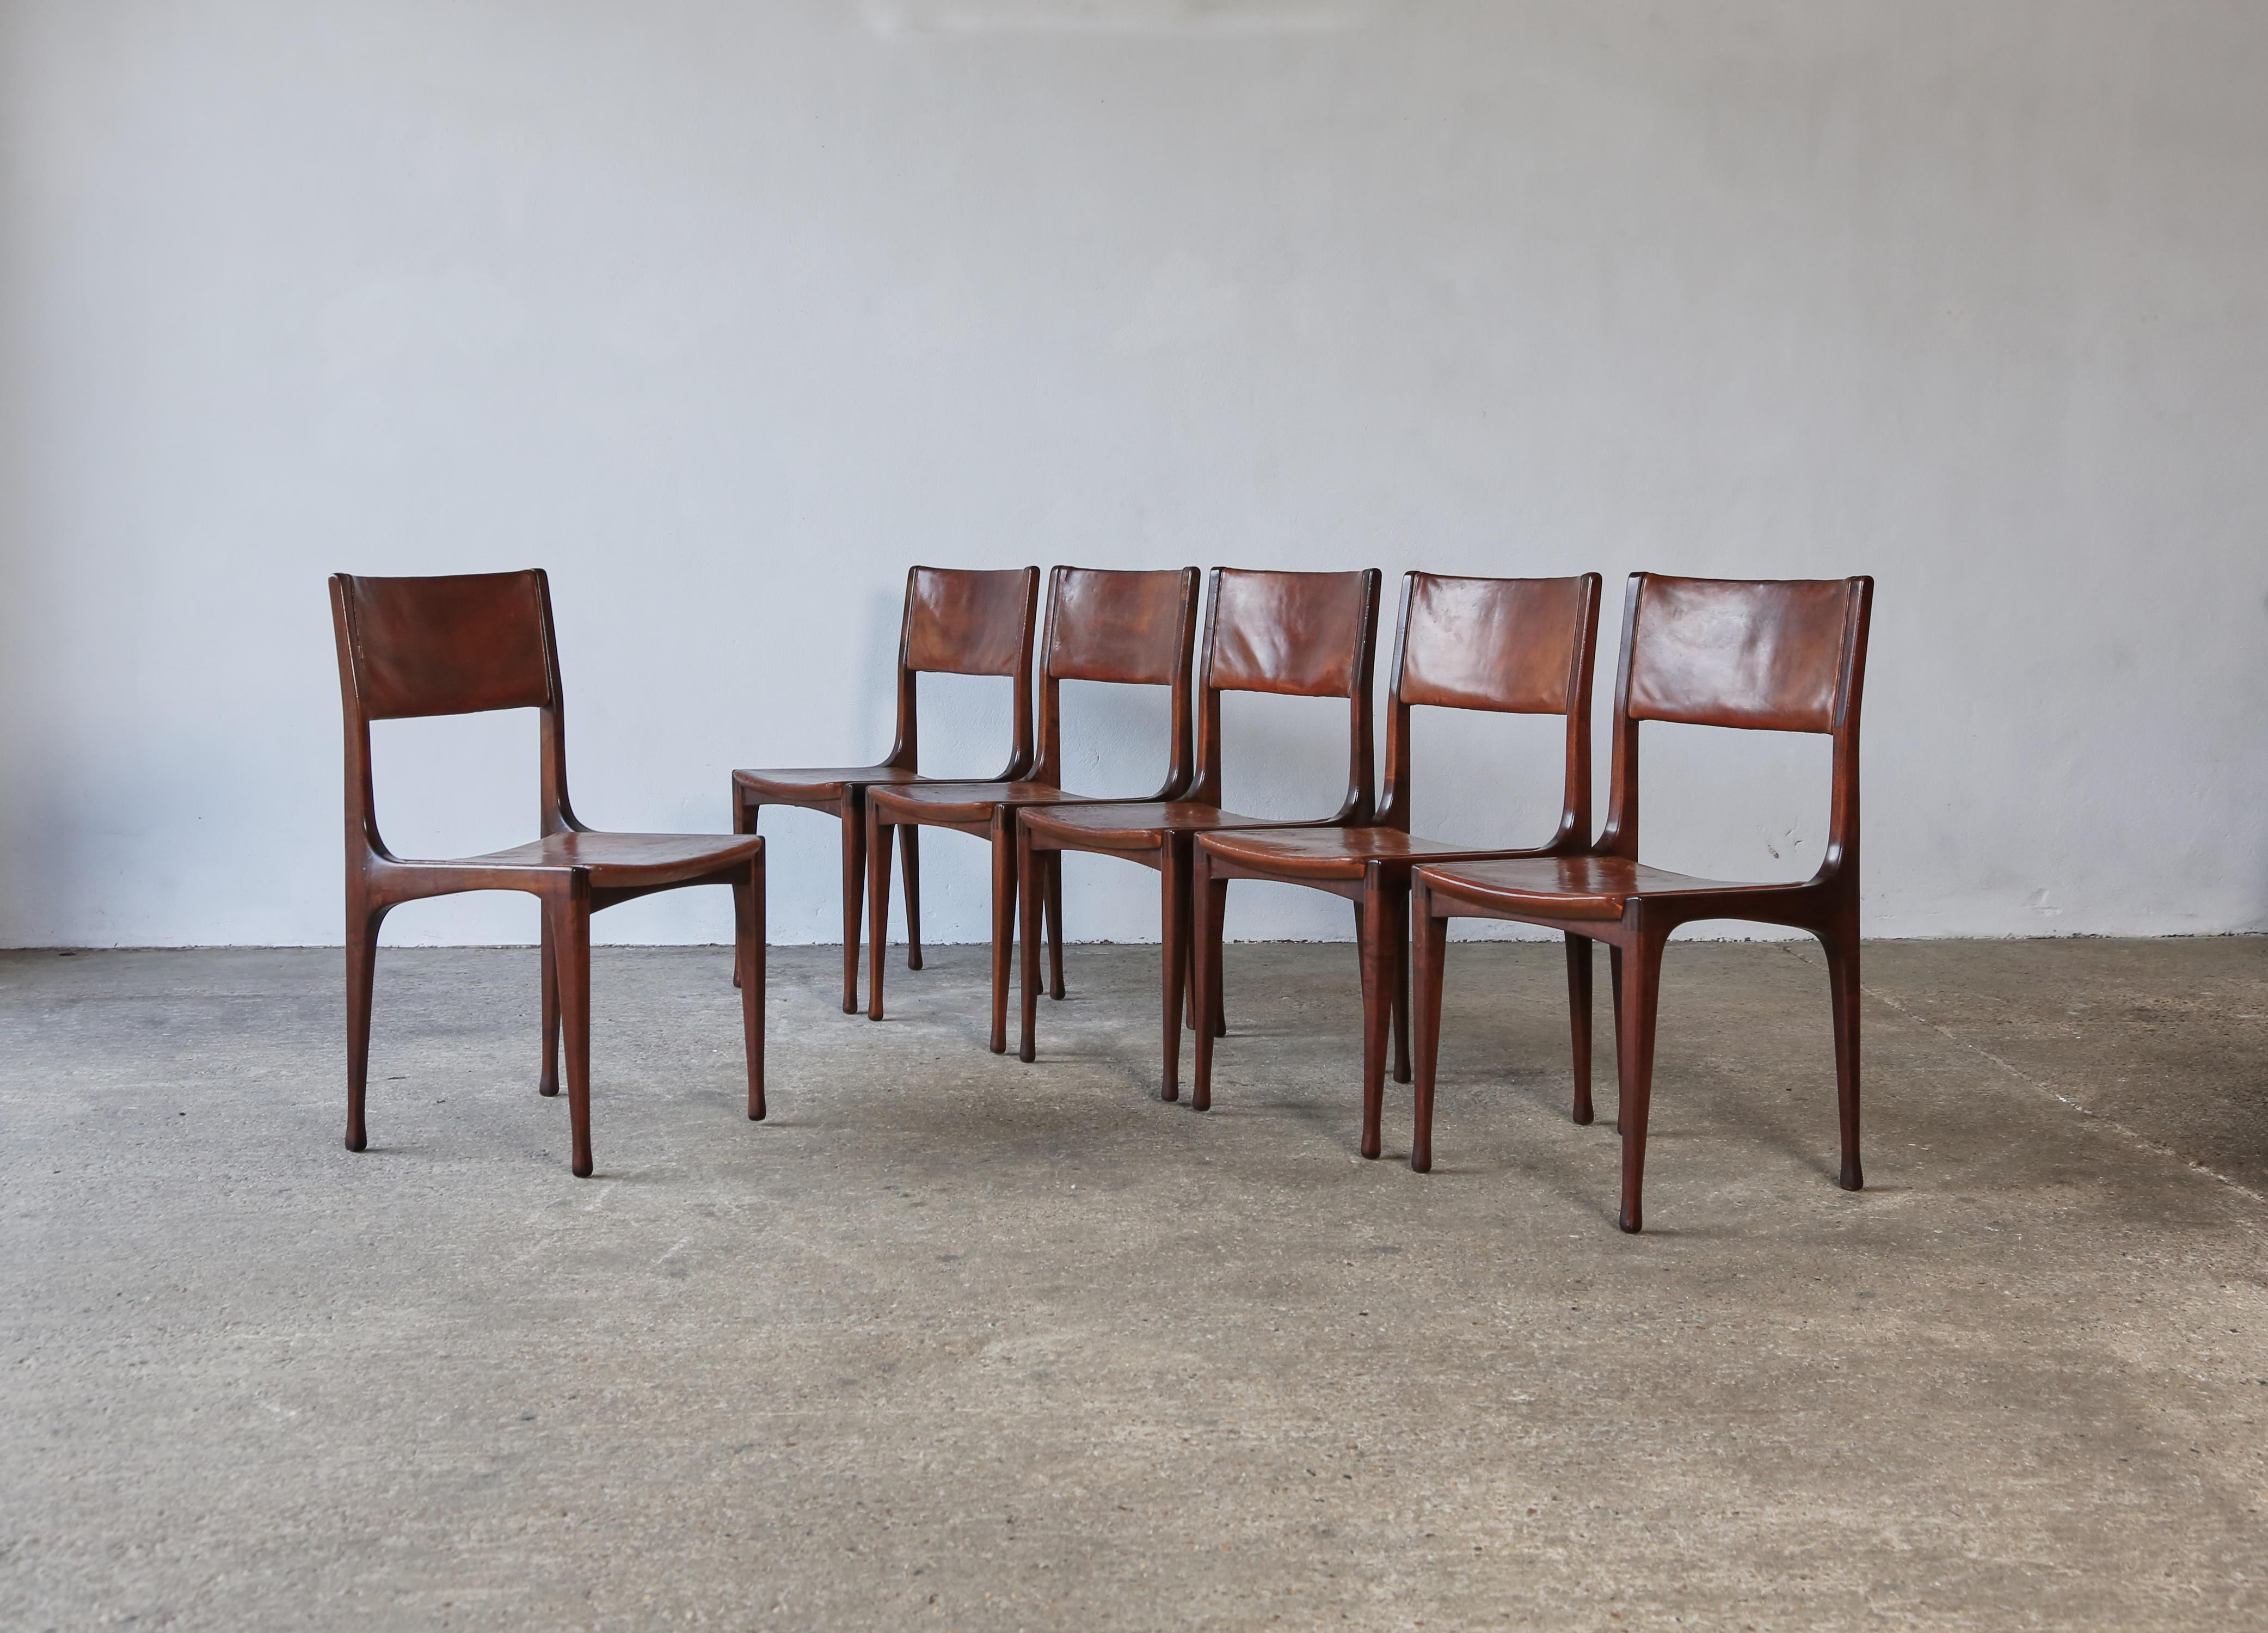 Extraordinario juego de seis sillas del primer Modelo 693, de Carlo De Carli para Cassina, Italia, años 50. Excepcionalmente, las sillas conservan el cuero original con una pátina rica y profunda. Los bastidores están en buen estado estructural tras